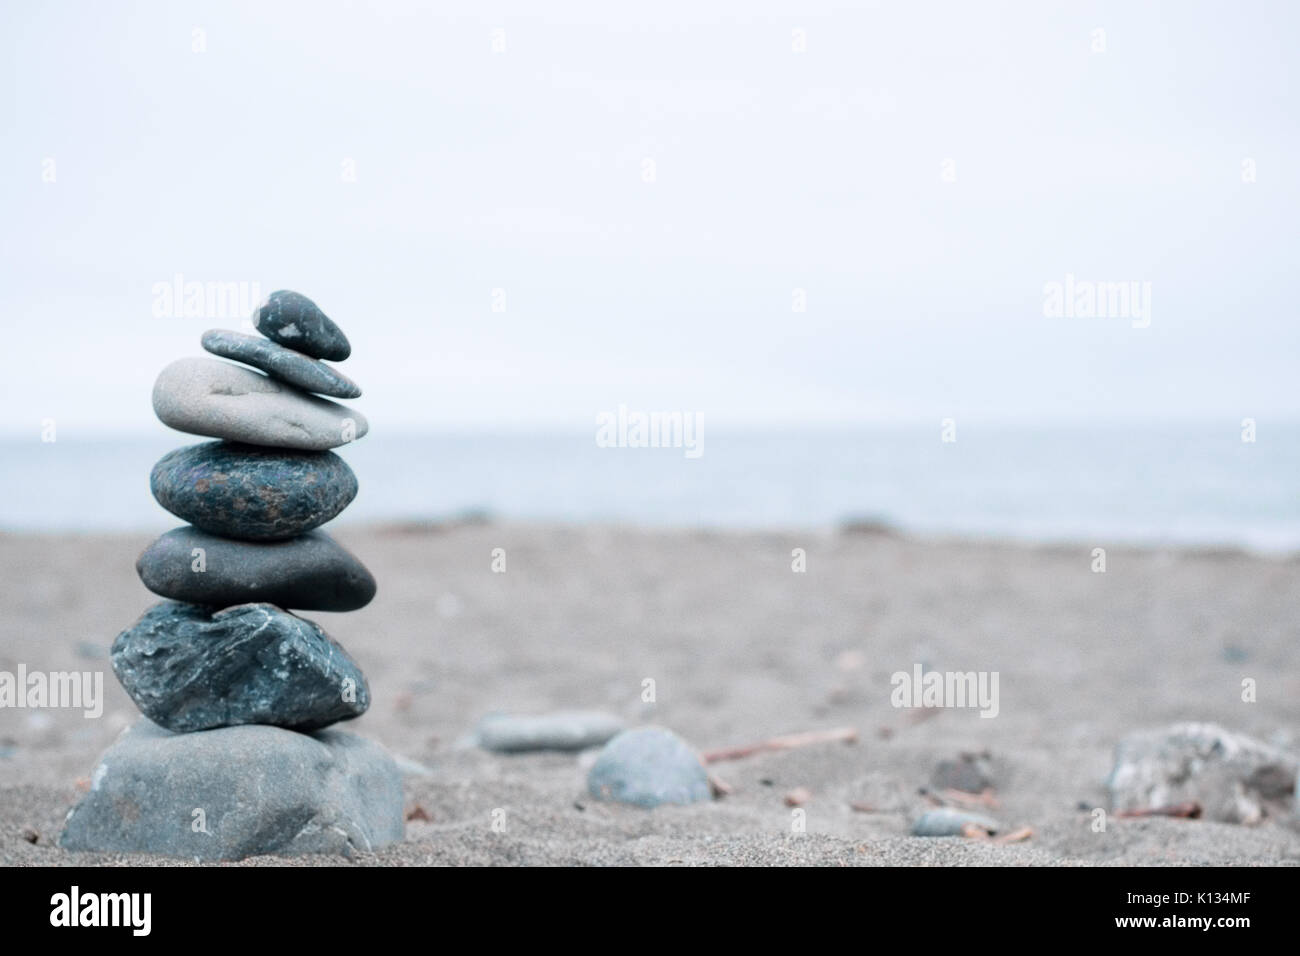 Sereine, monochrome bleu, roches empilées sur une plage de Californie symbolisant la paix, l'équilibre, la méditation, et la pleine conscience Banque D'Images